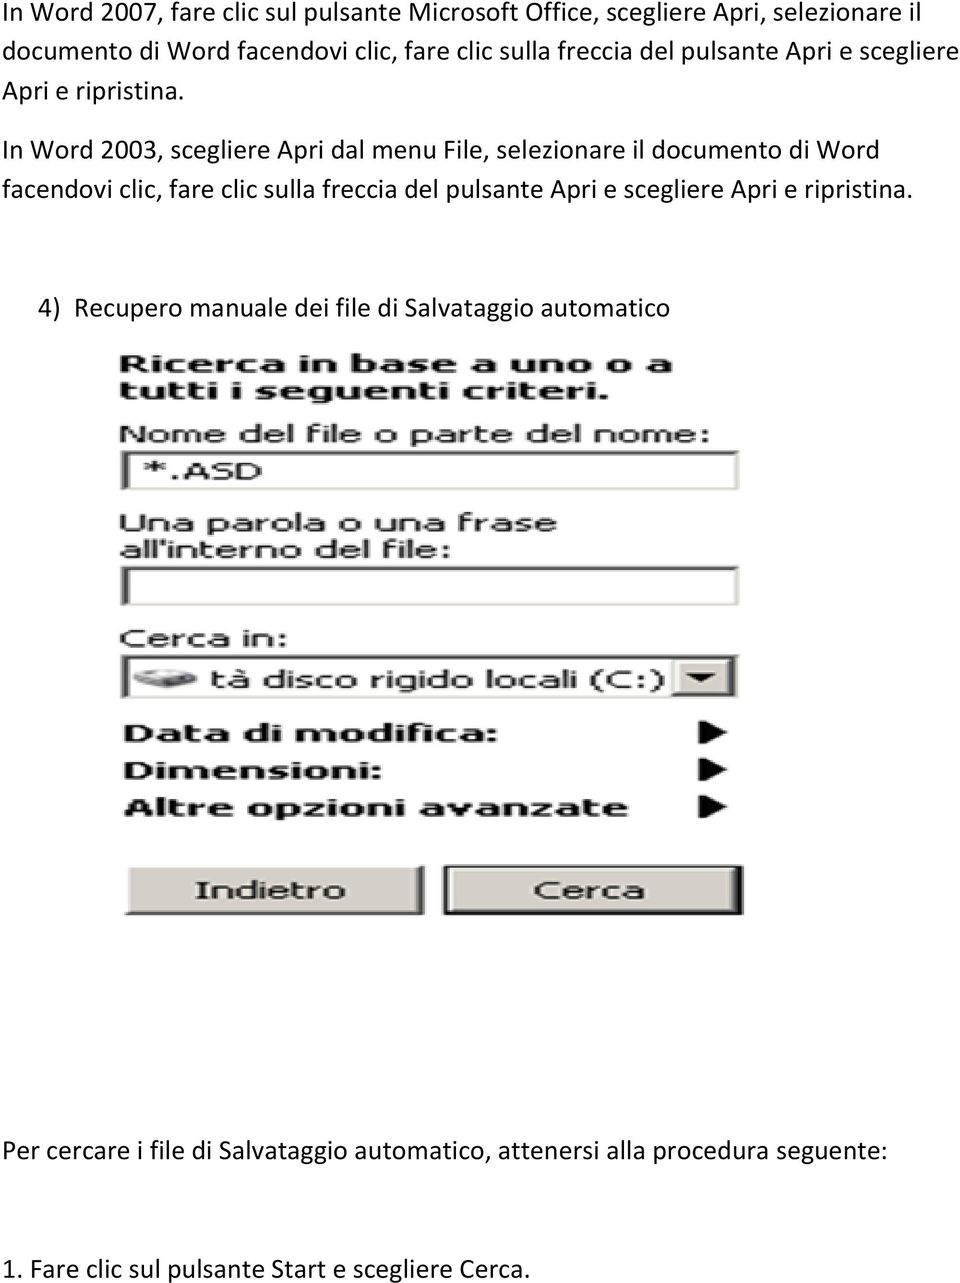 In Word 2003, scegliere Apri dal menu File, selezionare il documento di Word facendovi clic, fare clic sulla  4) Recupero manuale dei